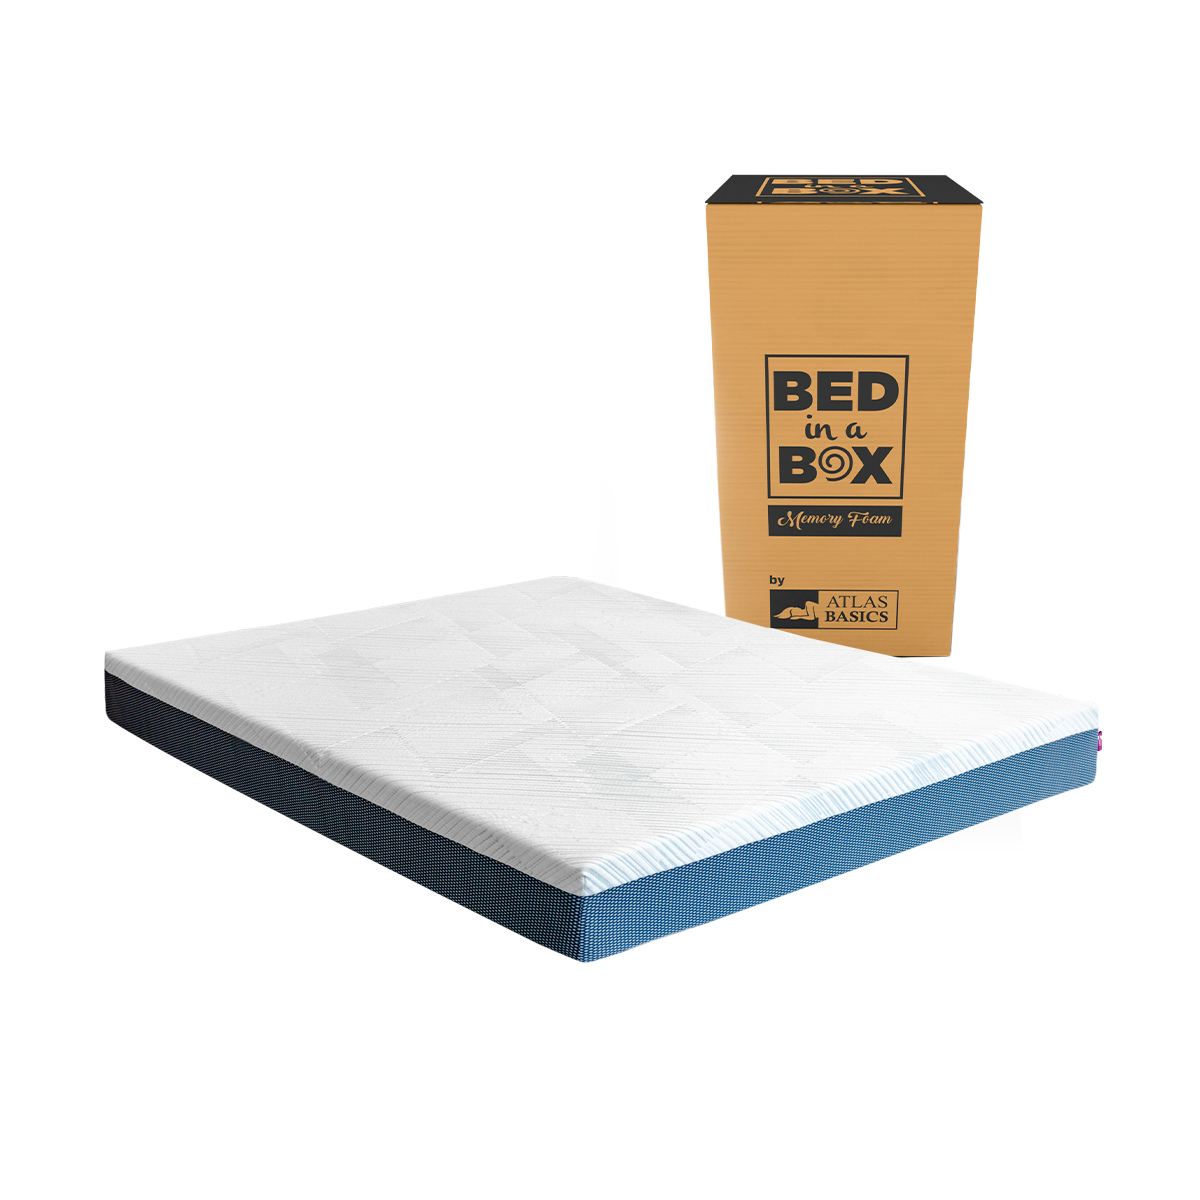 Colchón Matrimonial De Memory Foam Atlas Basics Bed In A Box